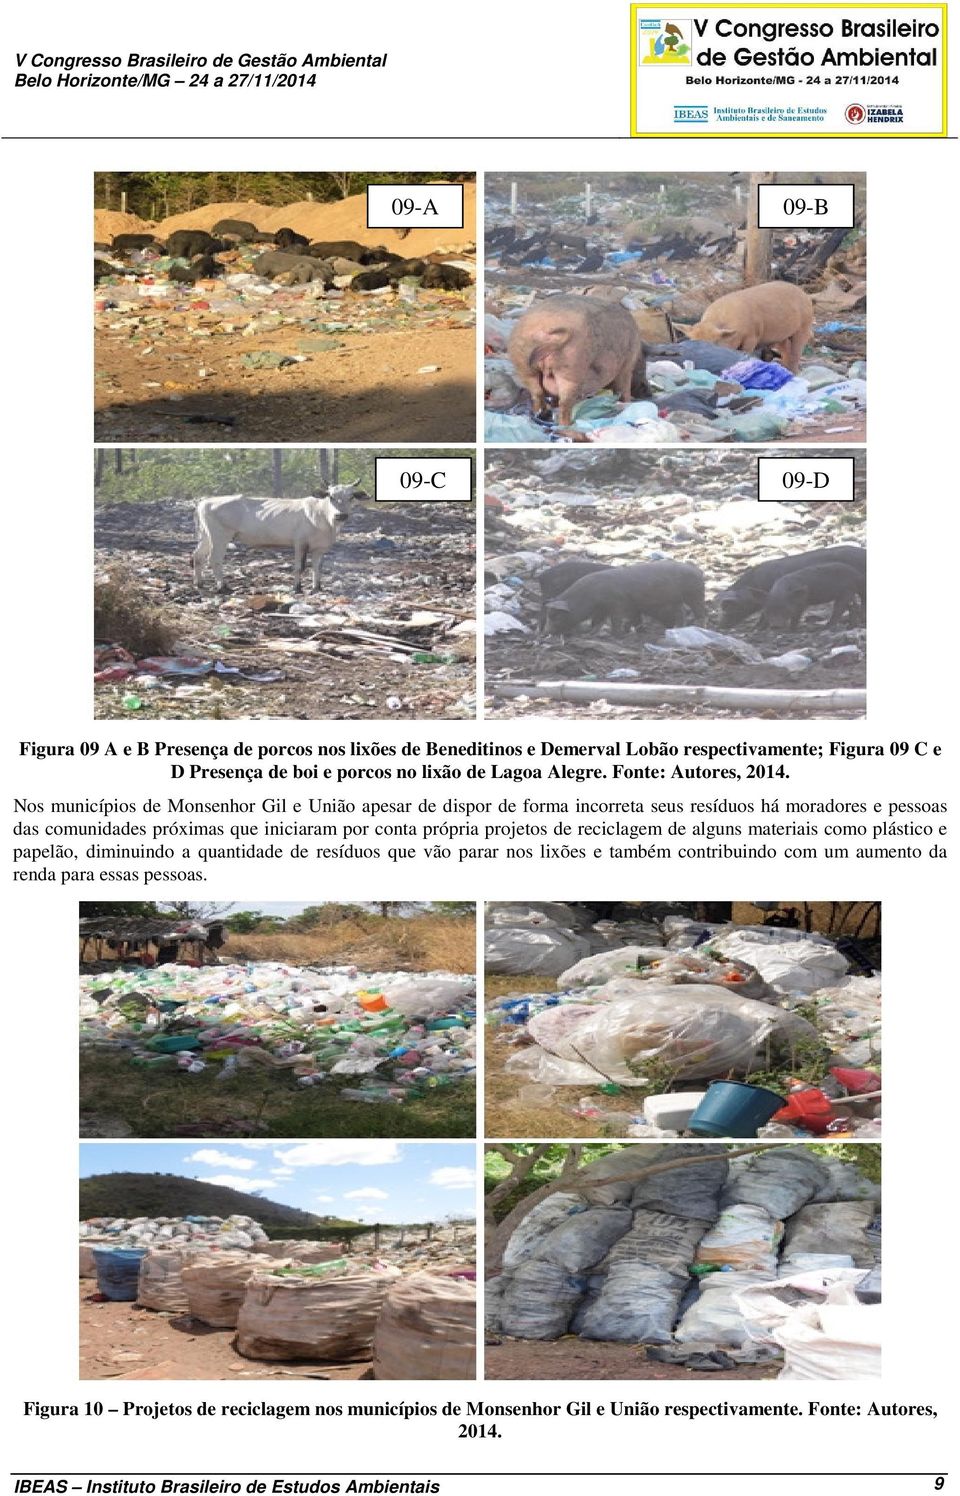 Nos municípios de Monsenhor Gil e União apesar de dispor de forma incorreta seus resíduos há moradores e pessoas das comunidades próximas que iniciaram por conta própria projetos de